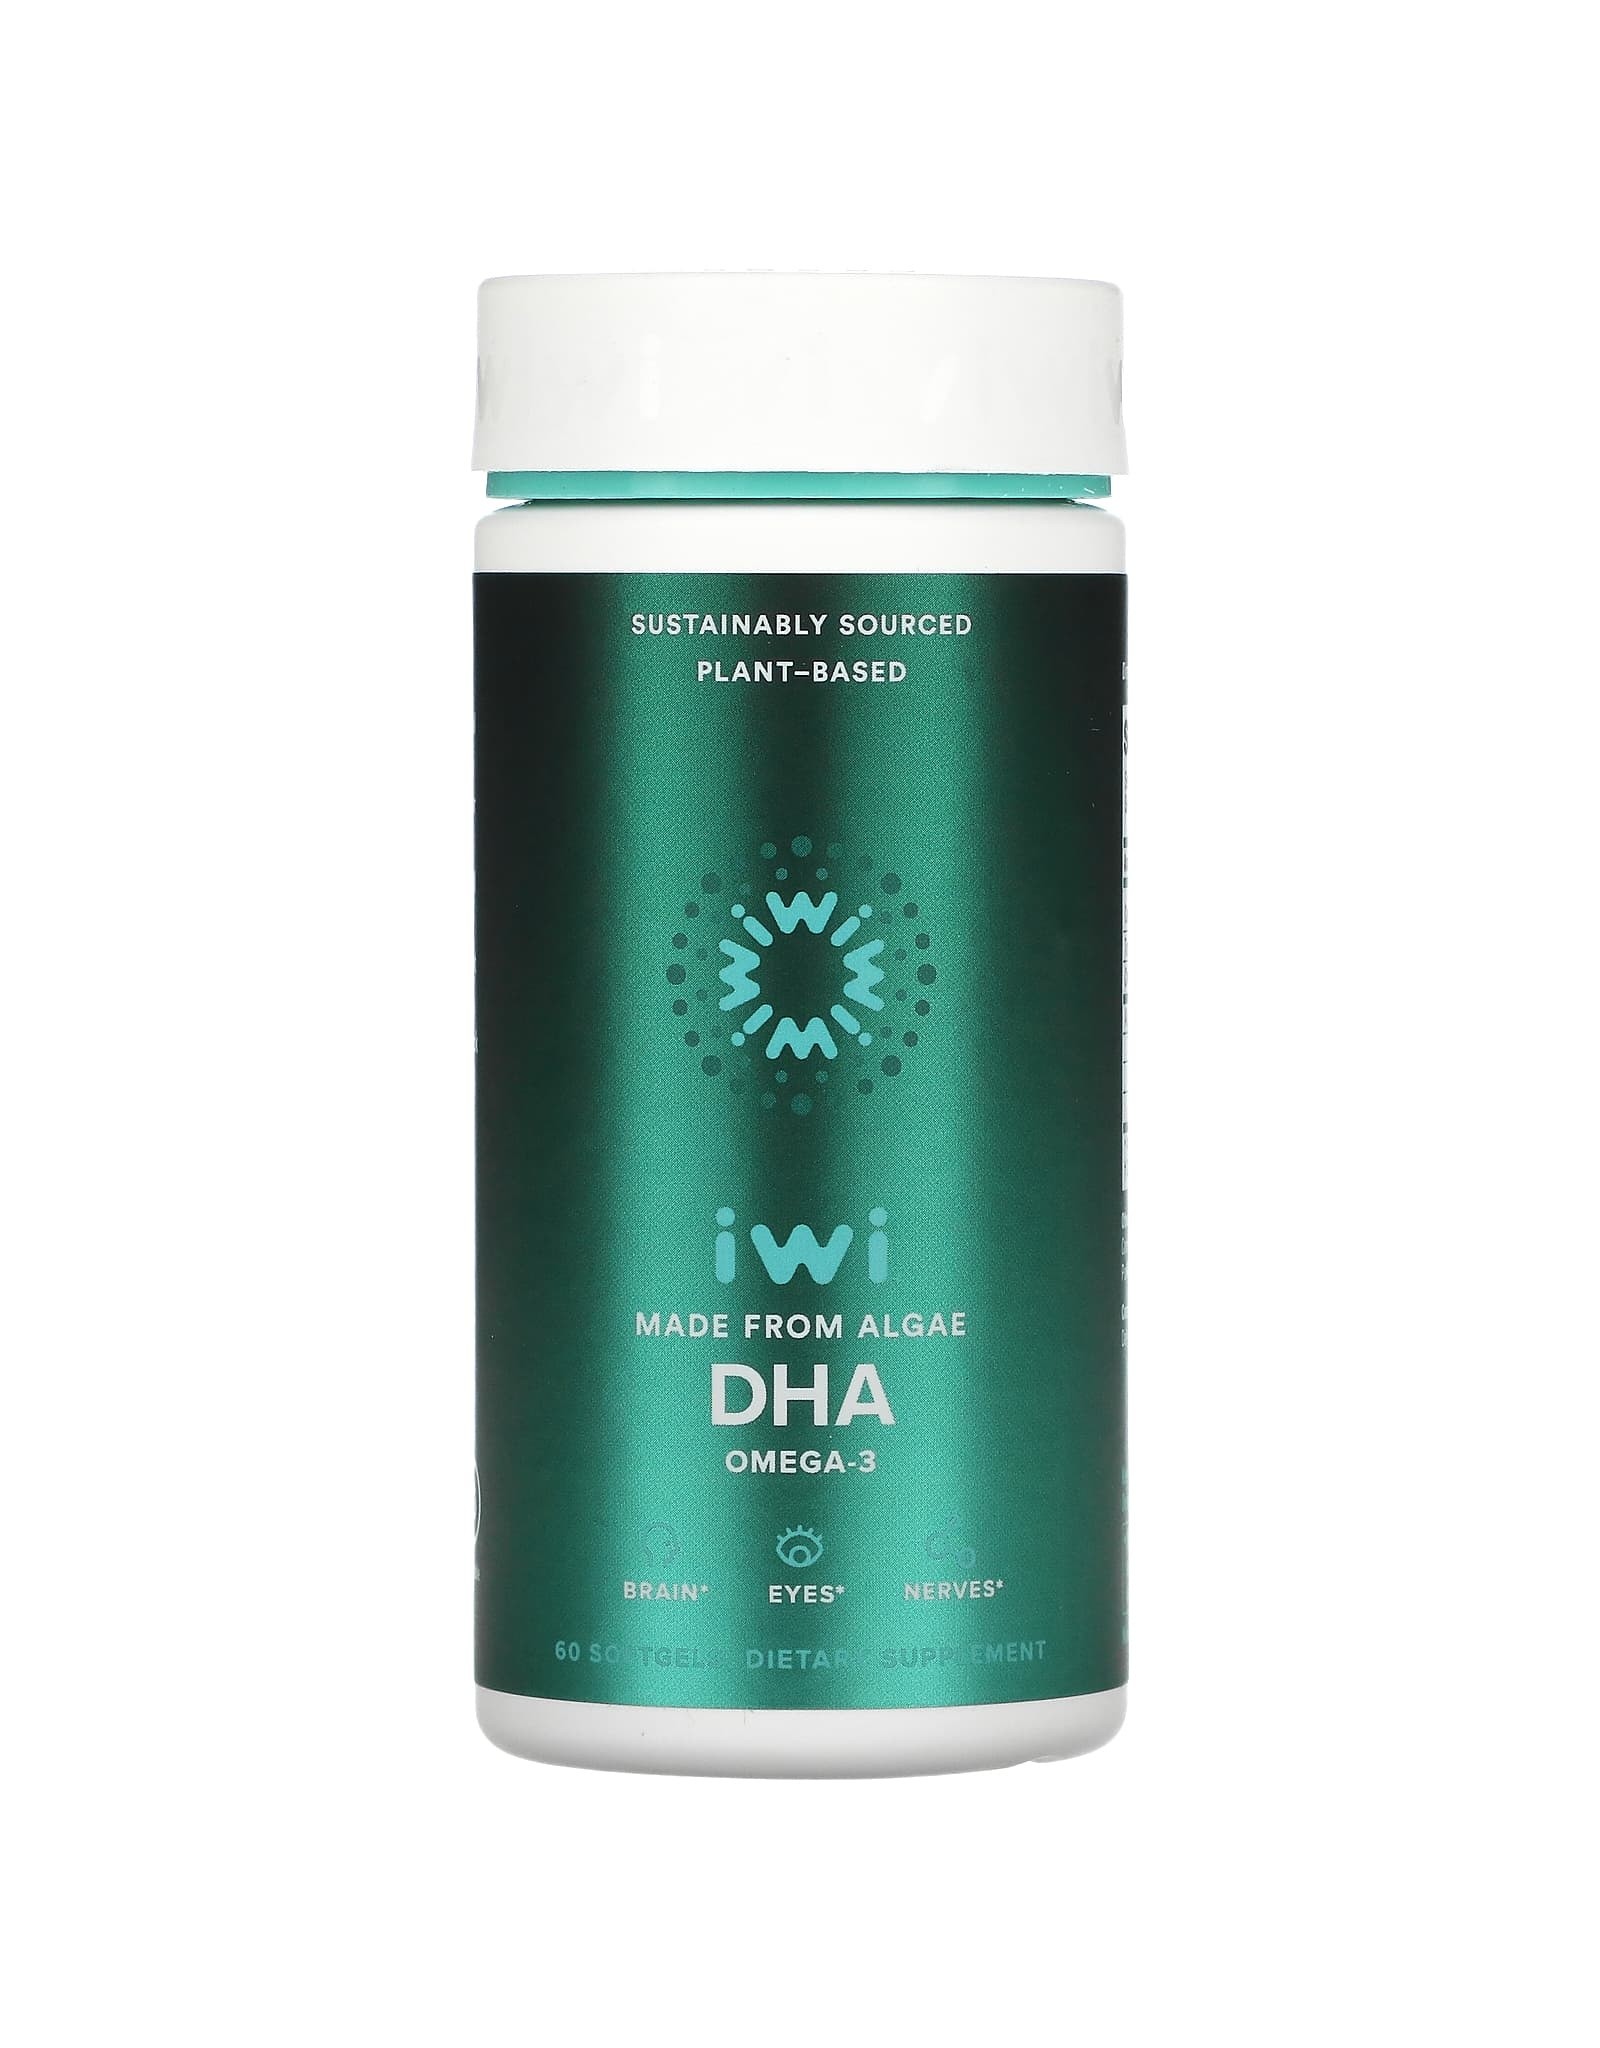 X iWi, Omega-3 DHA, 60 Softgels